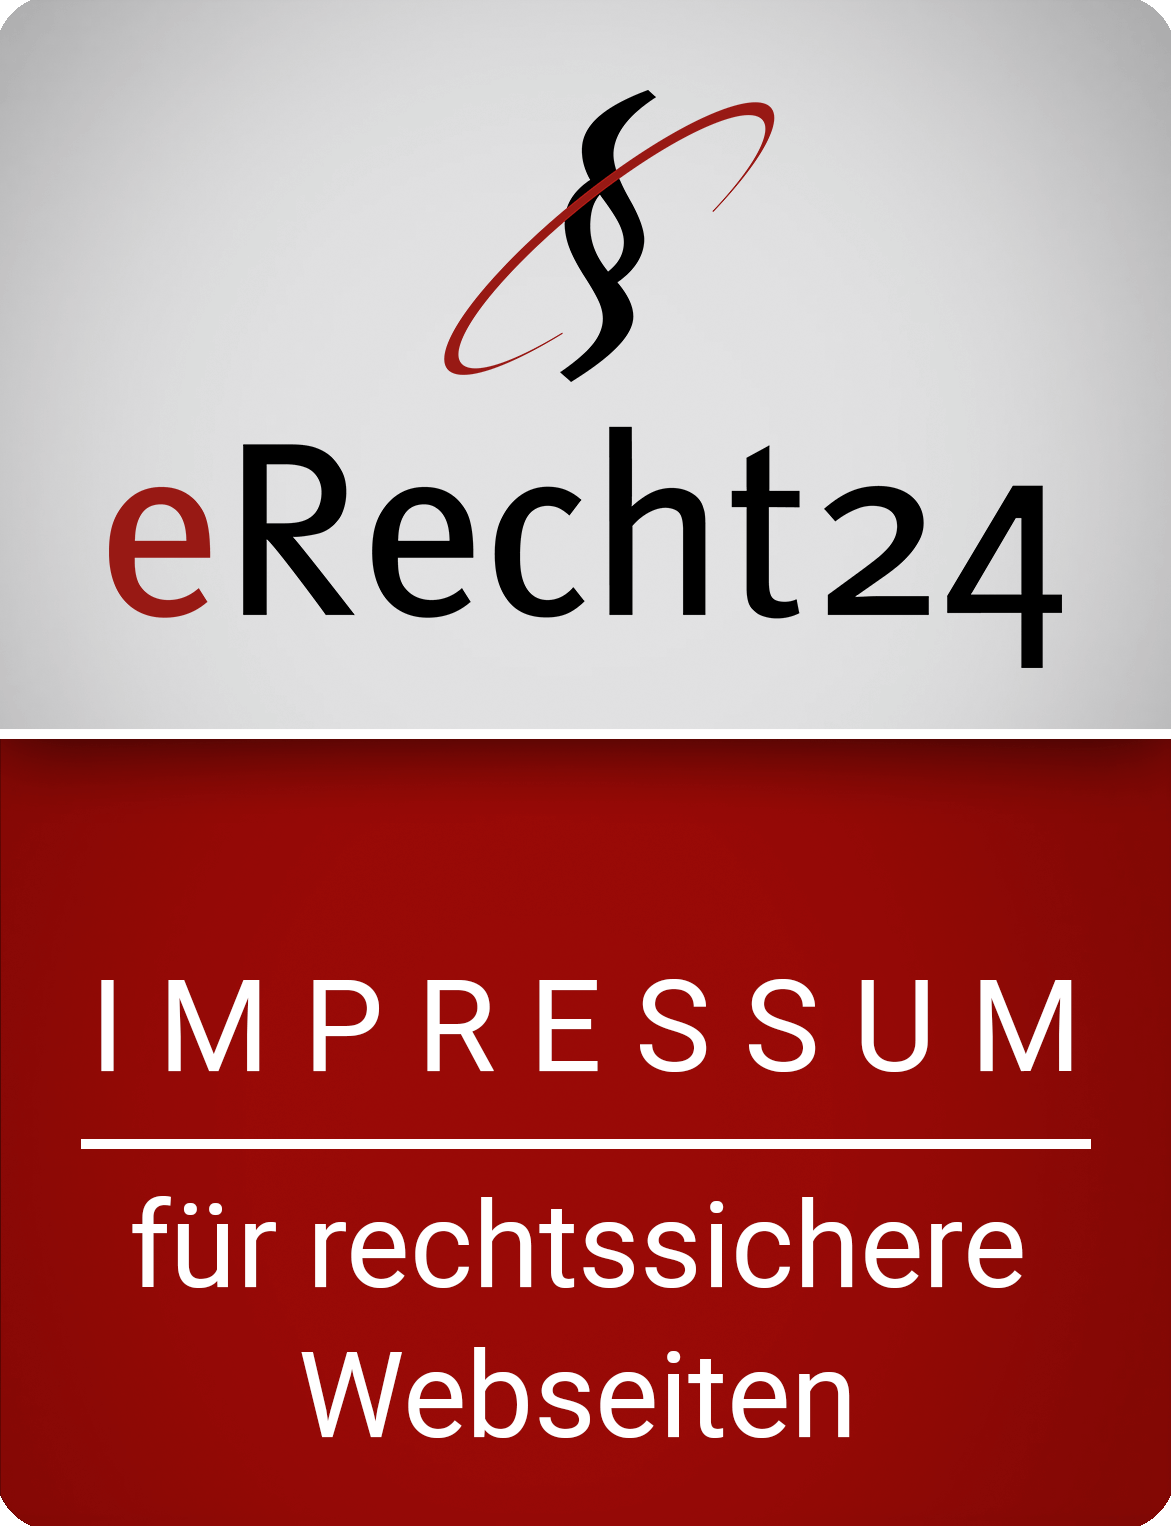 erecht24-siegel-impressum-rot-gross.png